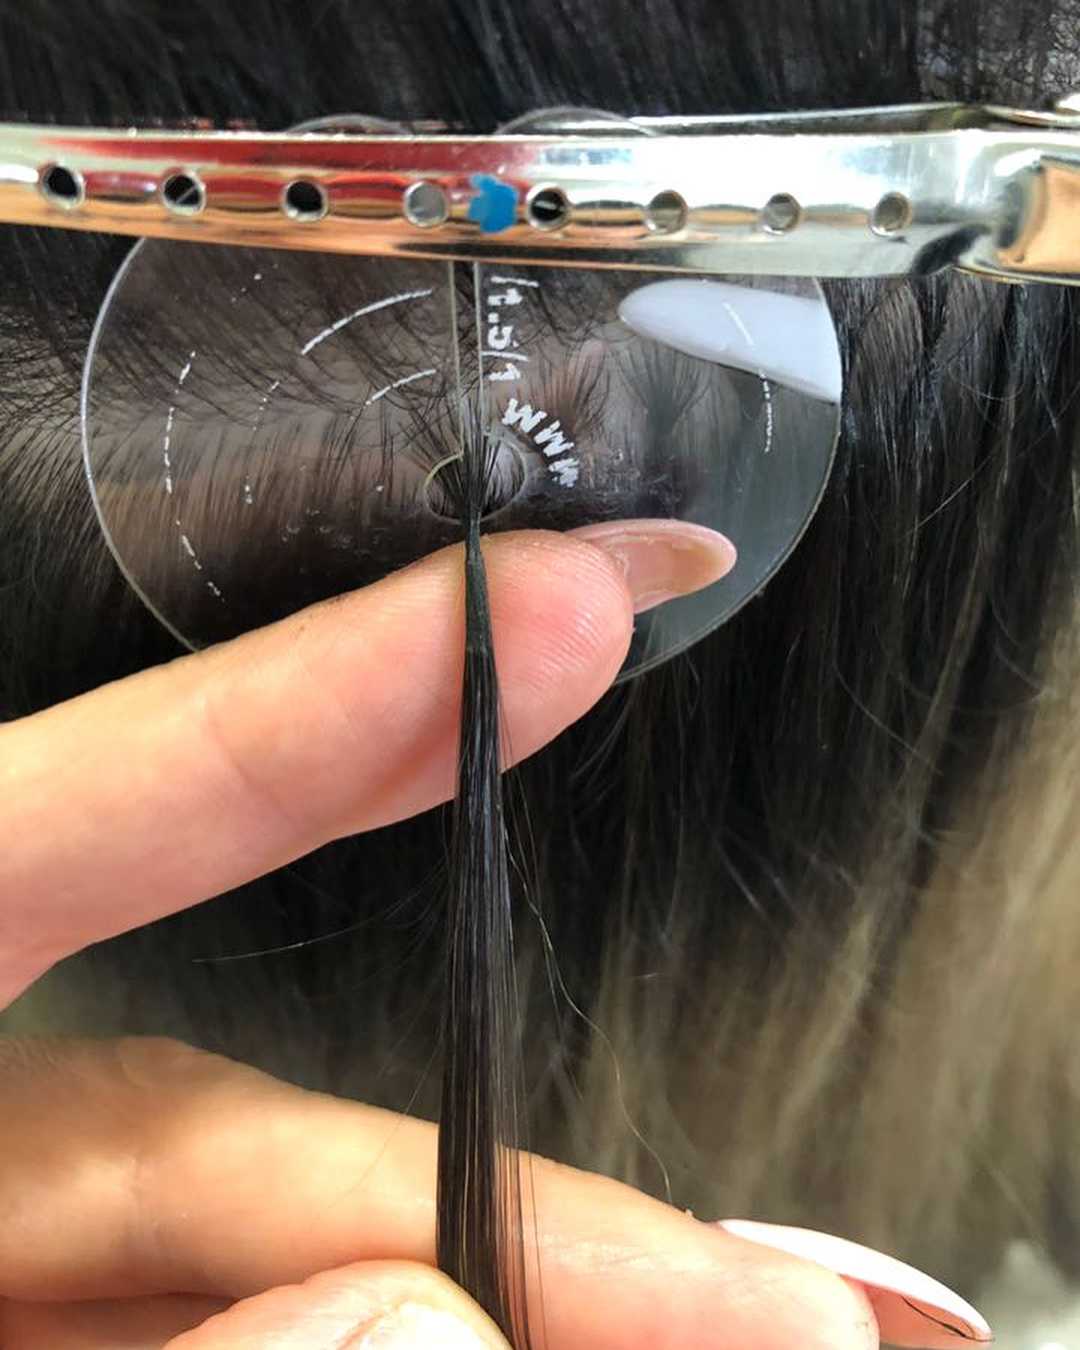 Основные способы укладки волос